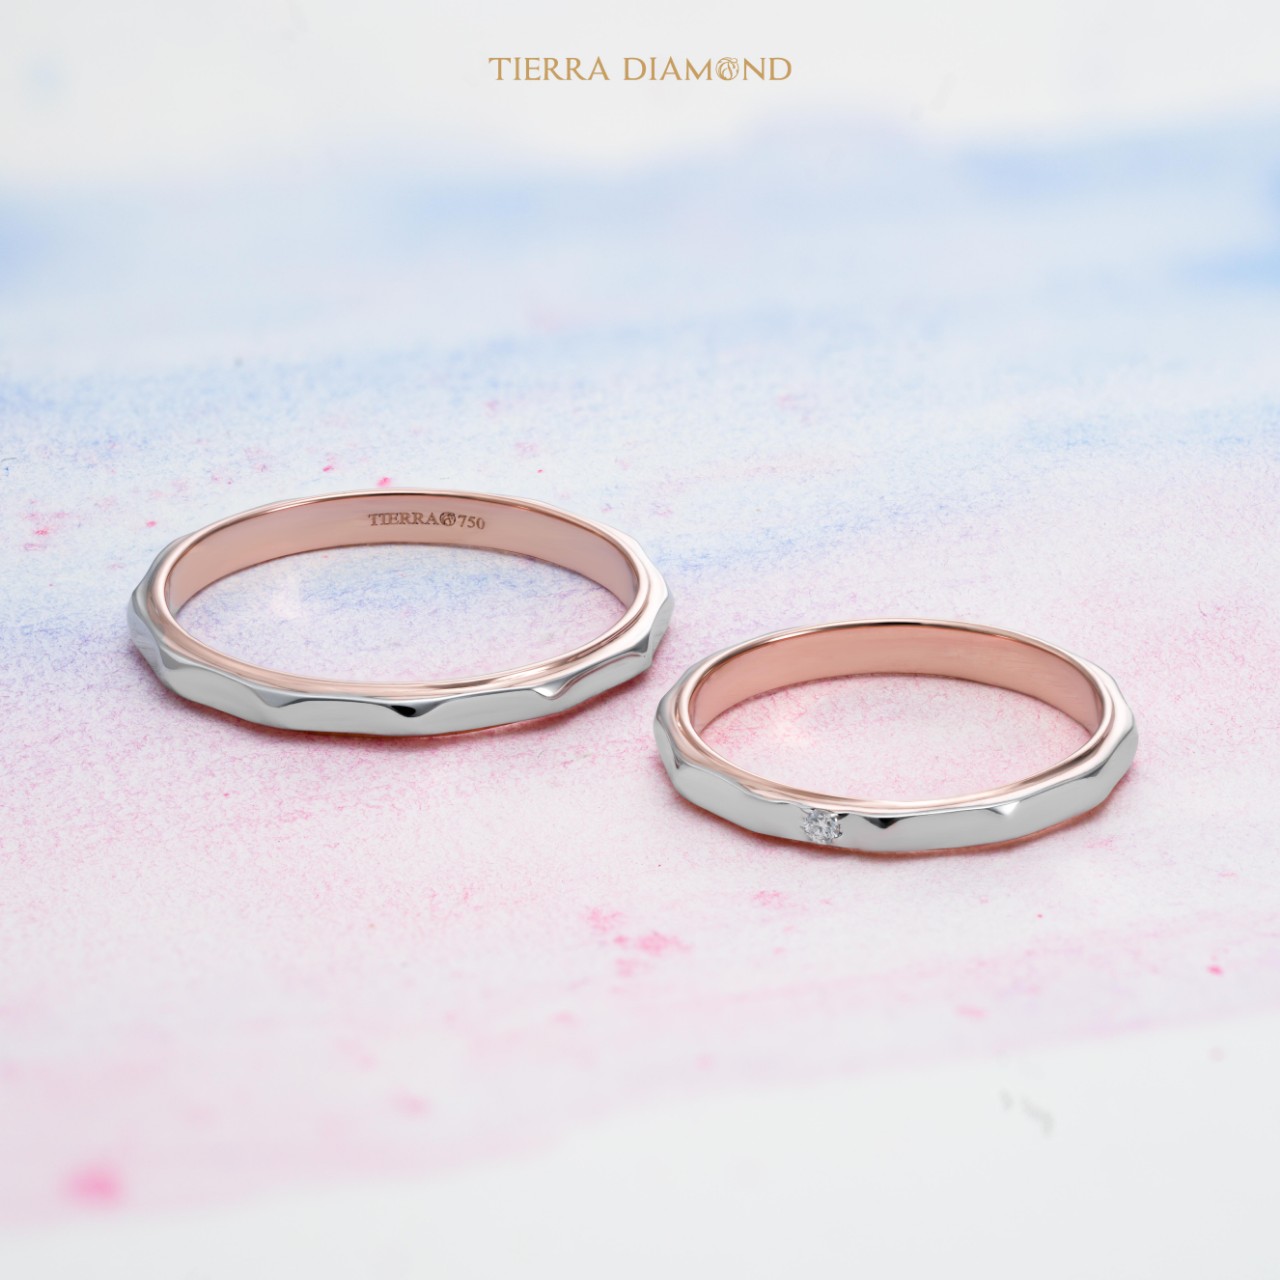 Bí quyết lựa chọn một cặp nhẫn cưới đẹp và ý nghĩa nhất.jpg